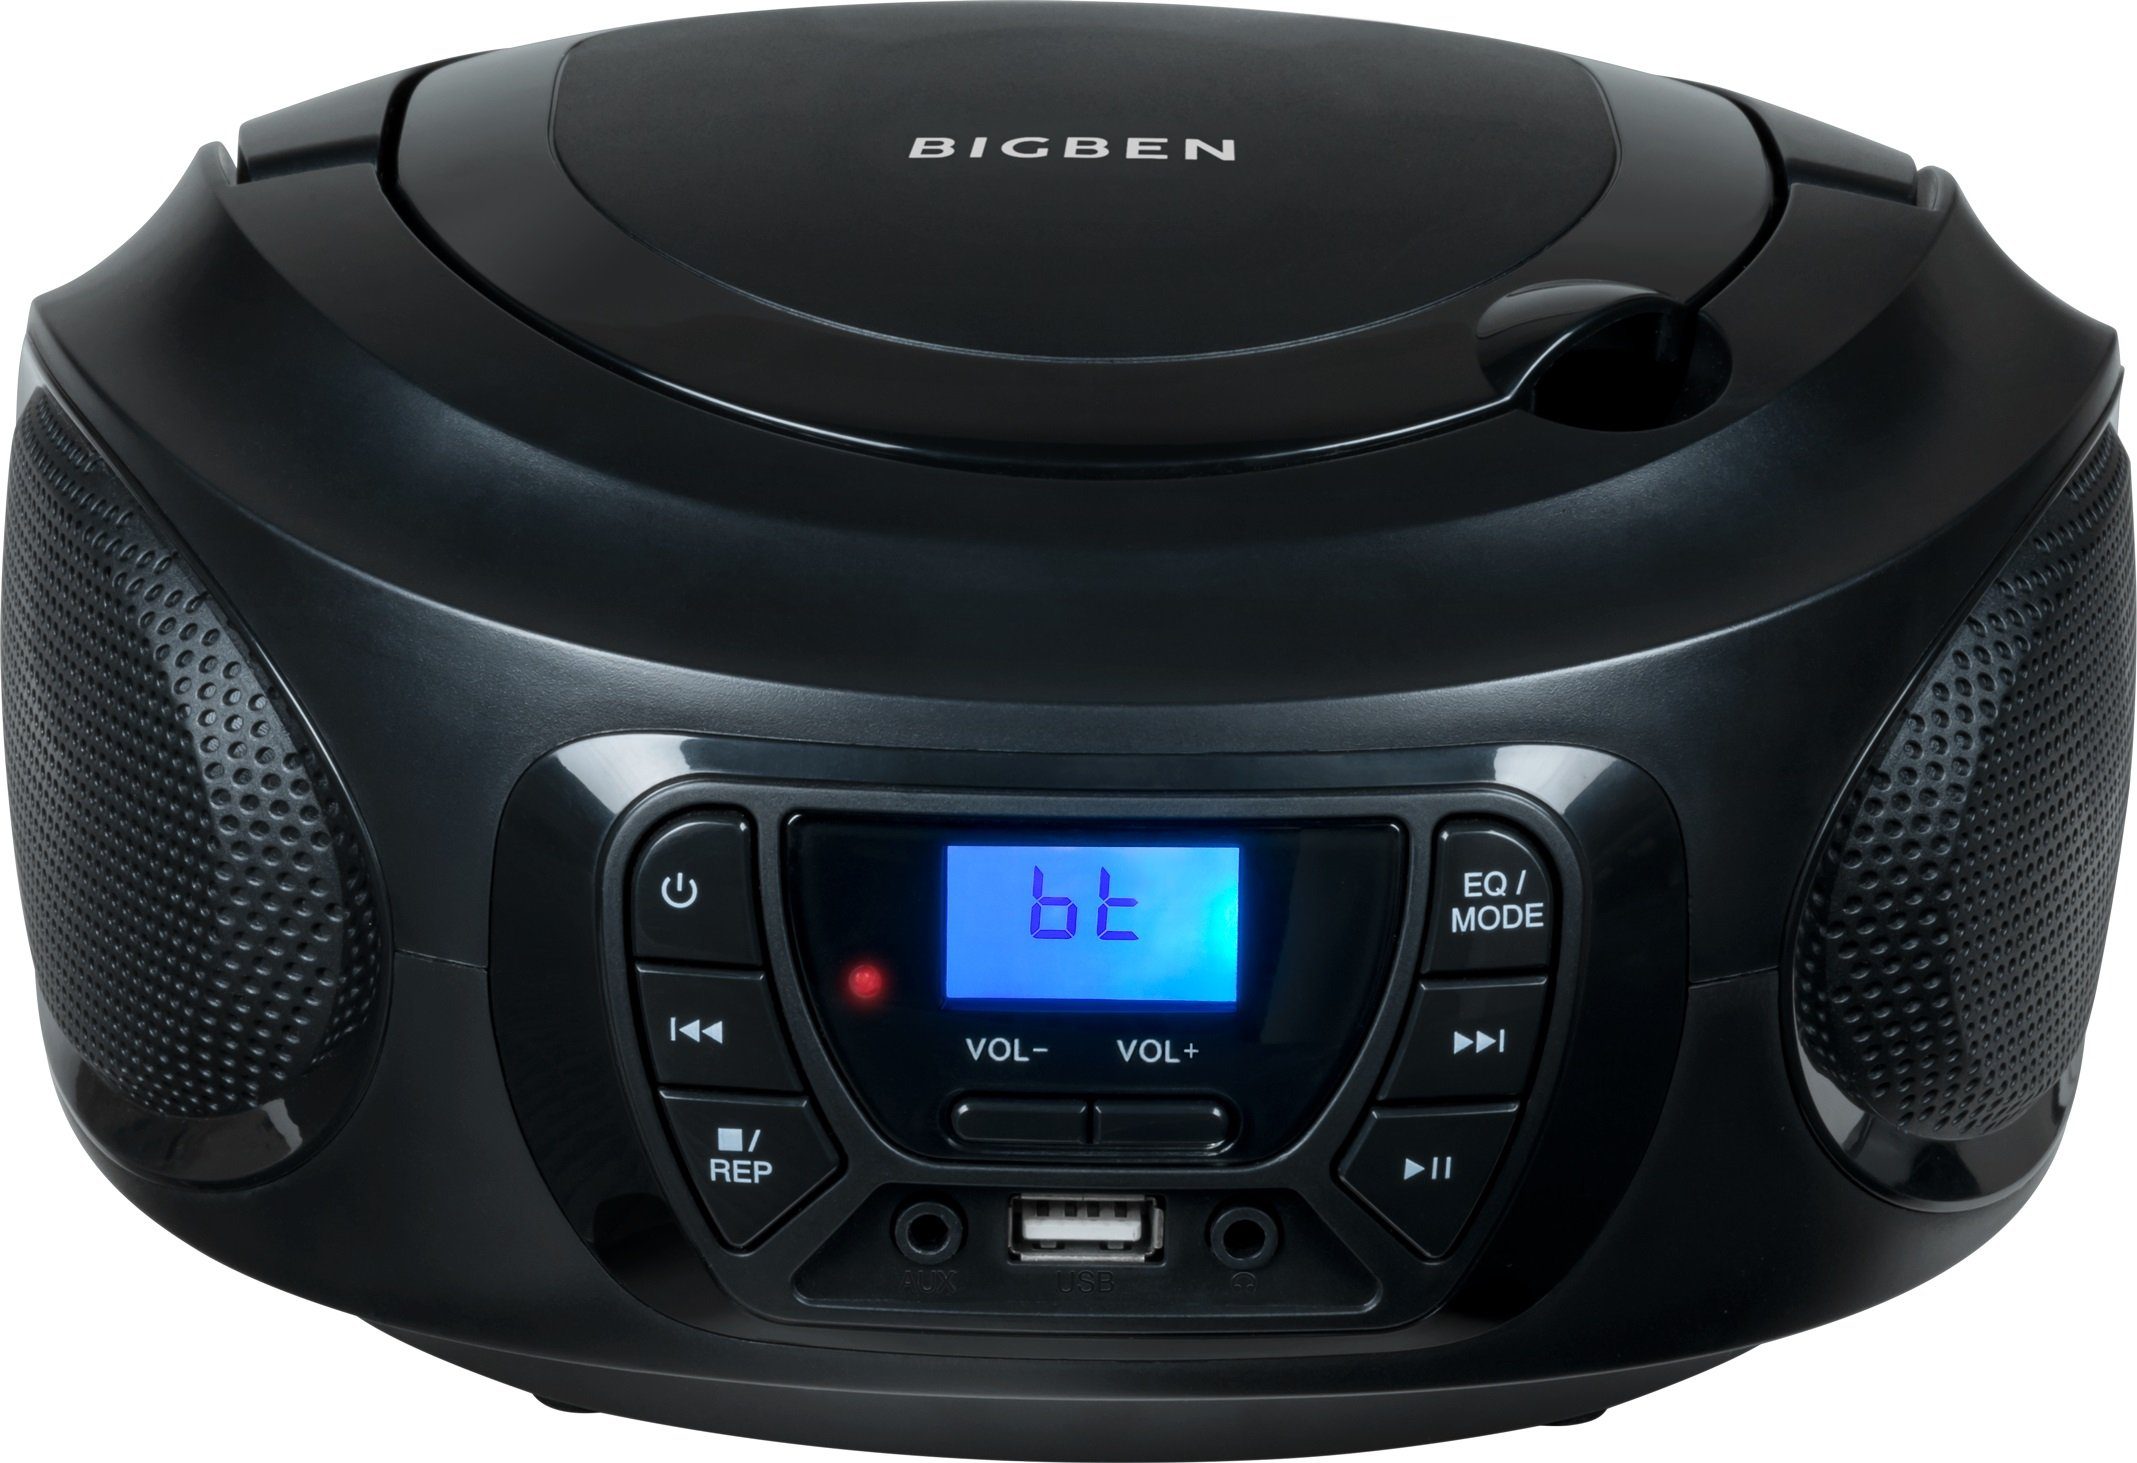 BigBen Kids Tragbares CD-Radiorecorder schwarz AU387278 CD/Radio USB/BT (FM-Tuner)